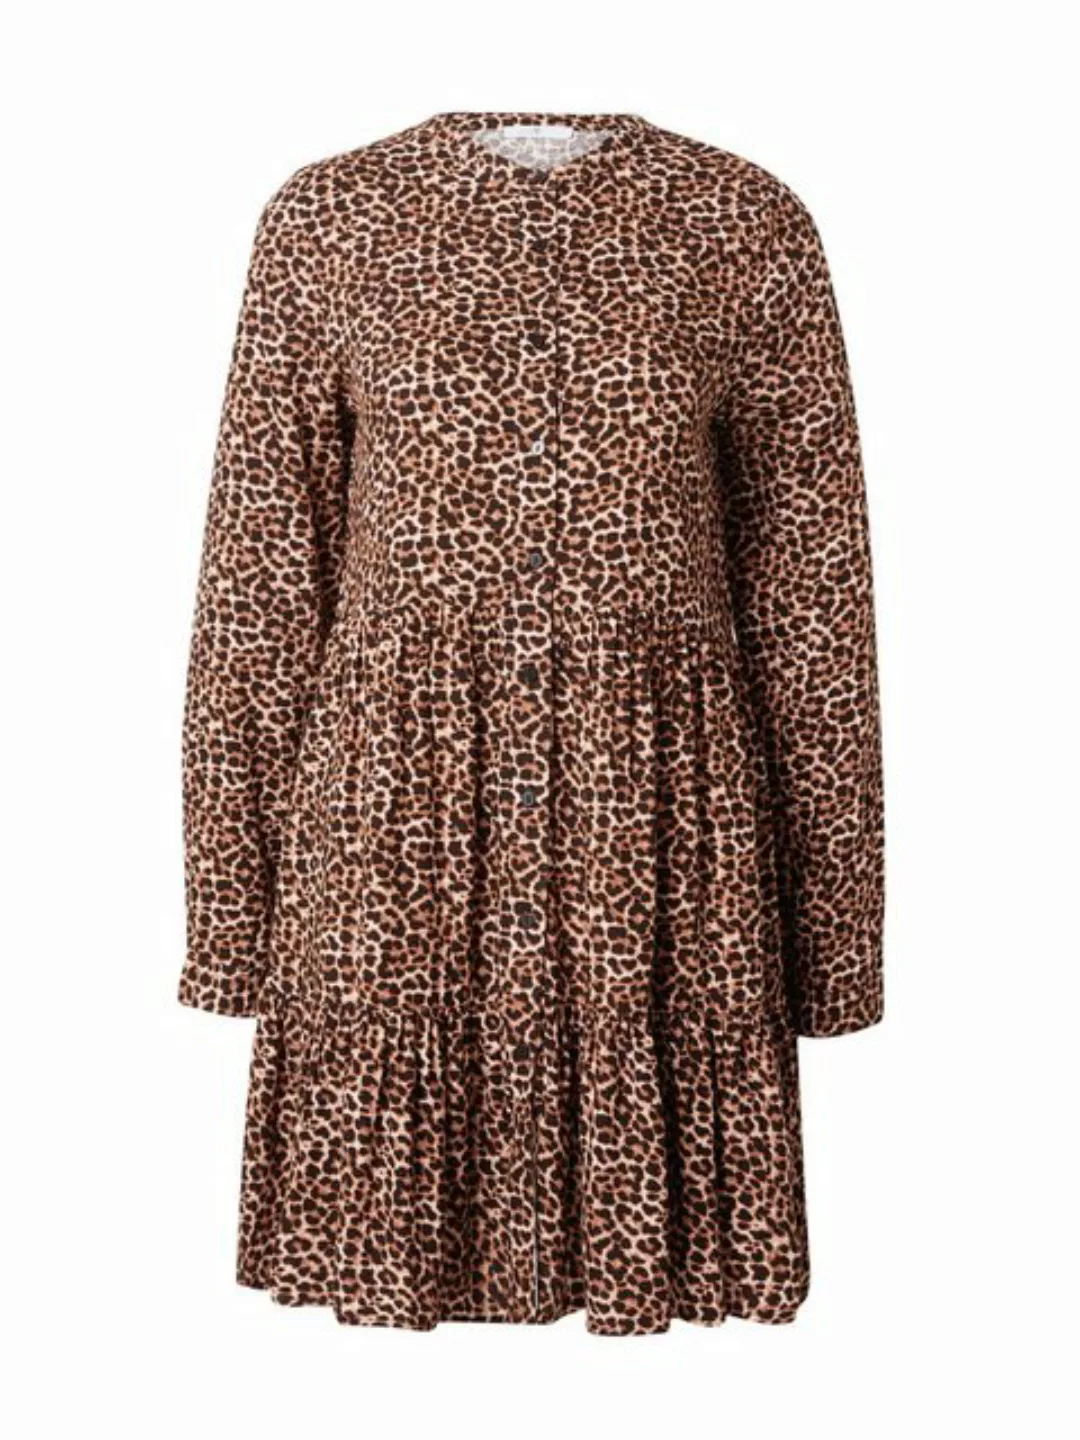 HaILY’S Shirtkleid Kleid Kurzes Langarm Rüschen Dress (lang) 6895 in Braun günstig online kaufen